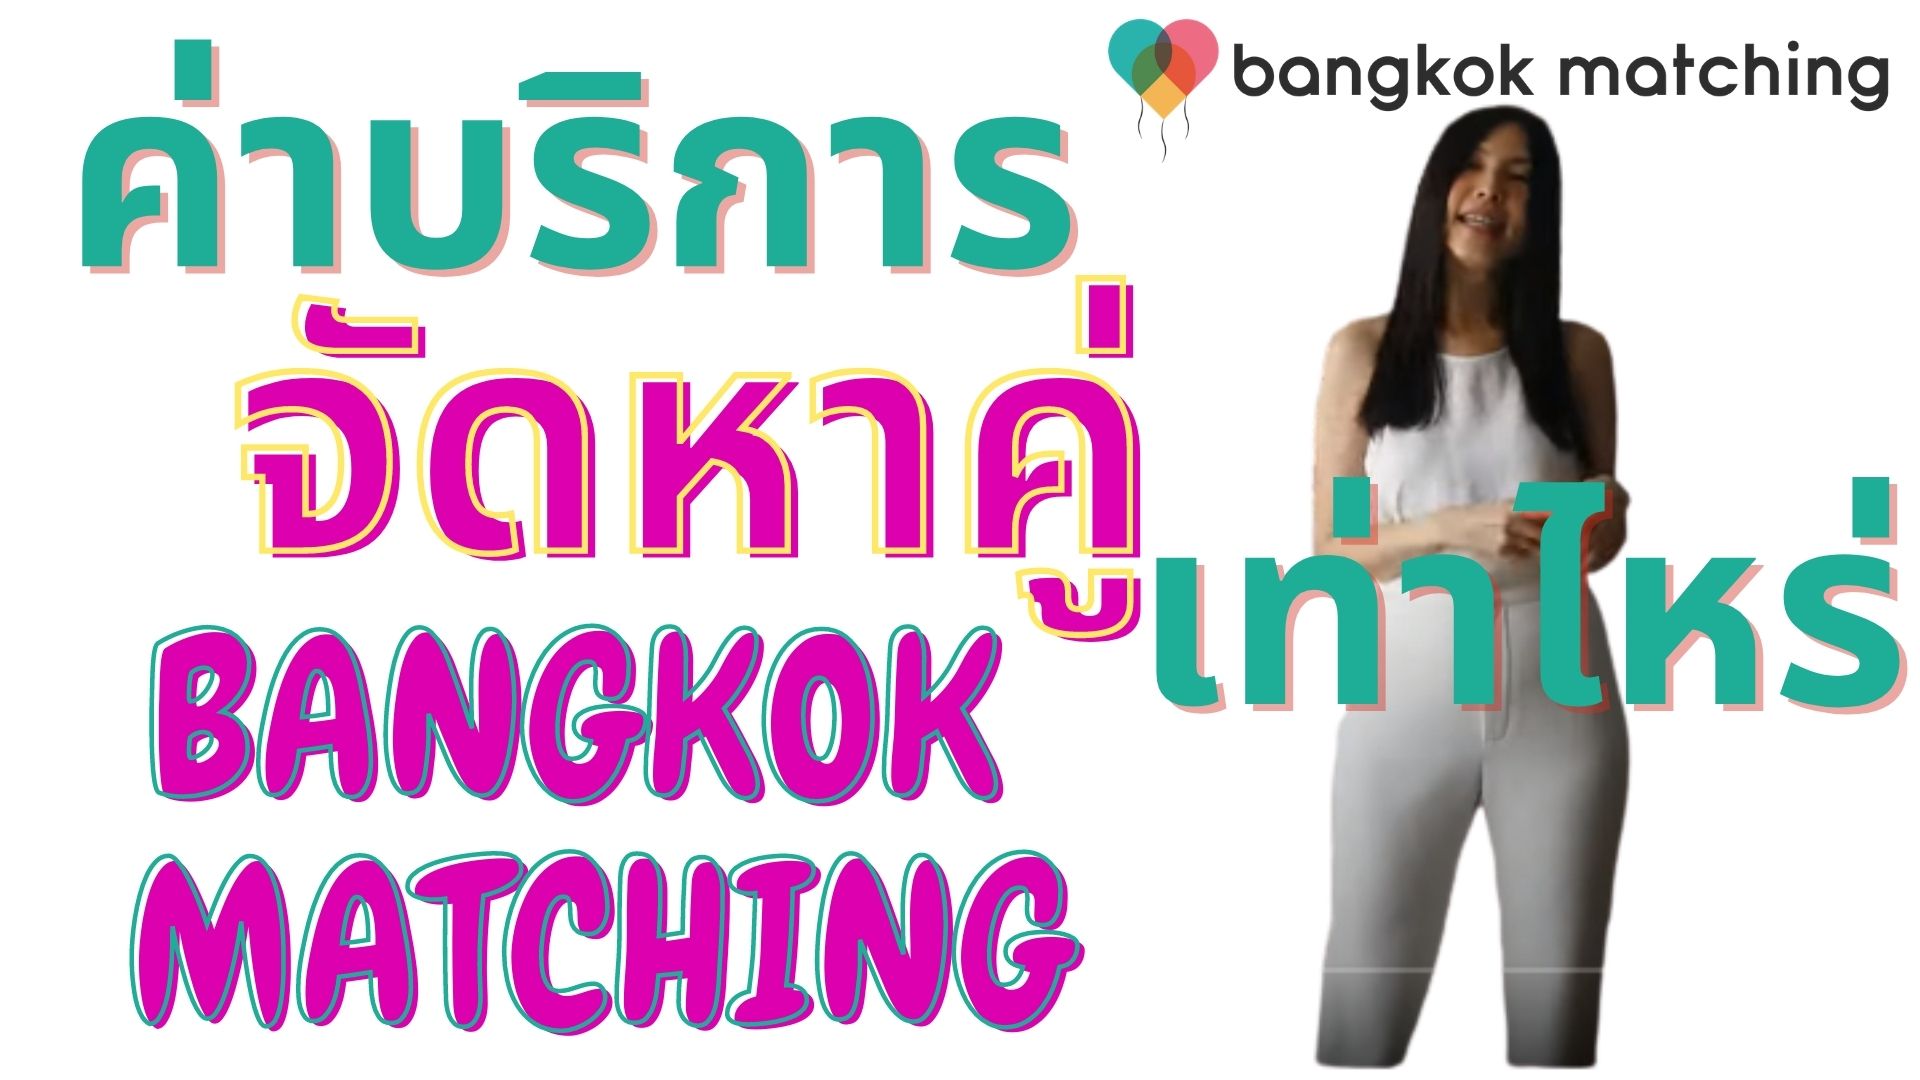 บริษัทจัดหาคู่ ราคา / ราคาค่าบริการ บริการจัดหาคู่ ของบริษัทจัดหาคู่ พรีเมี่ยม Bangkok Matching เท่าไหร่?